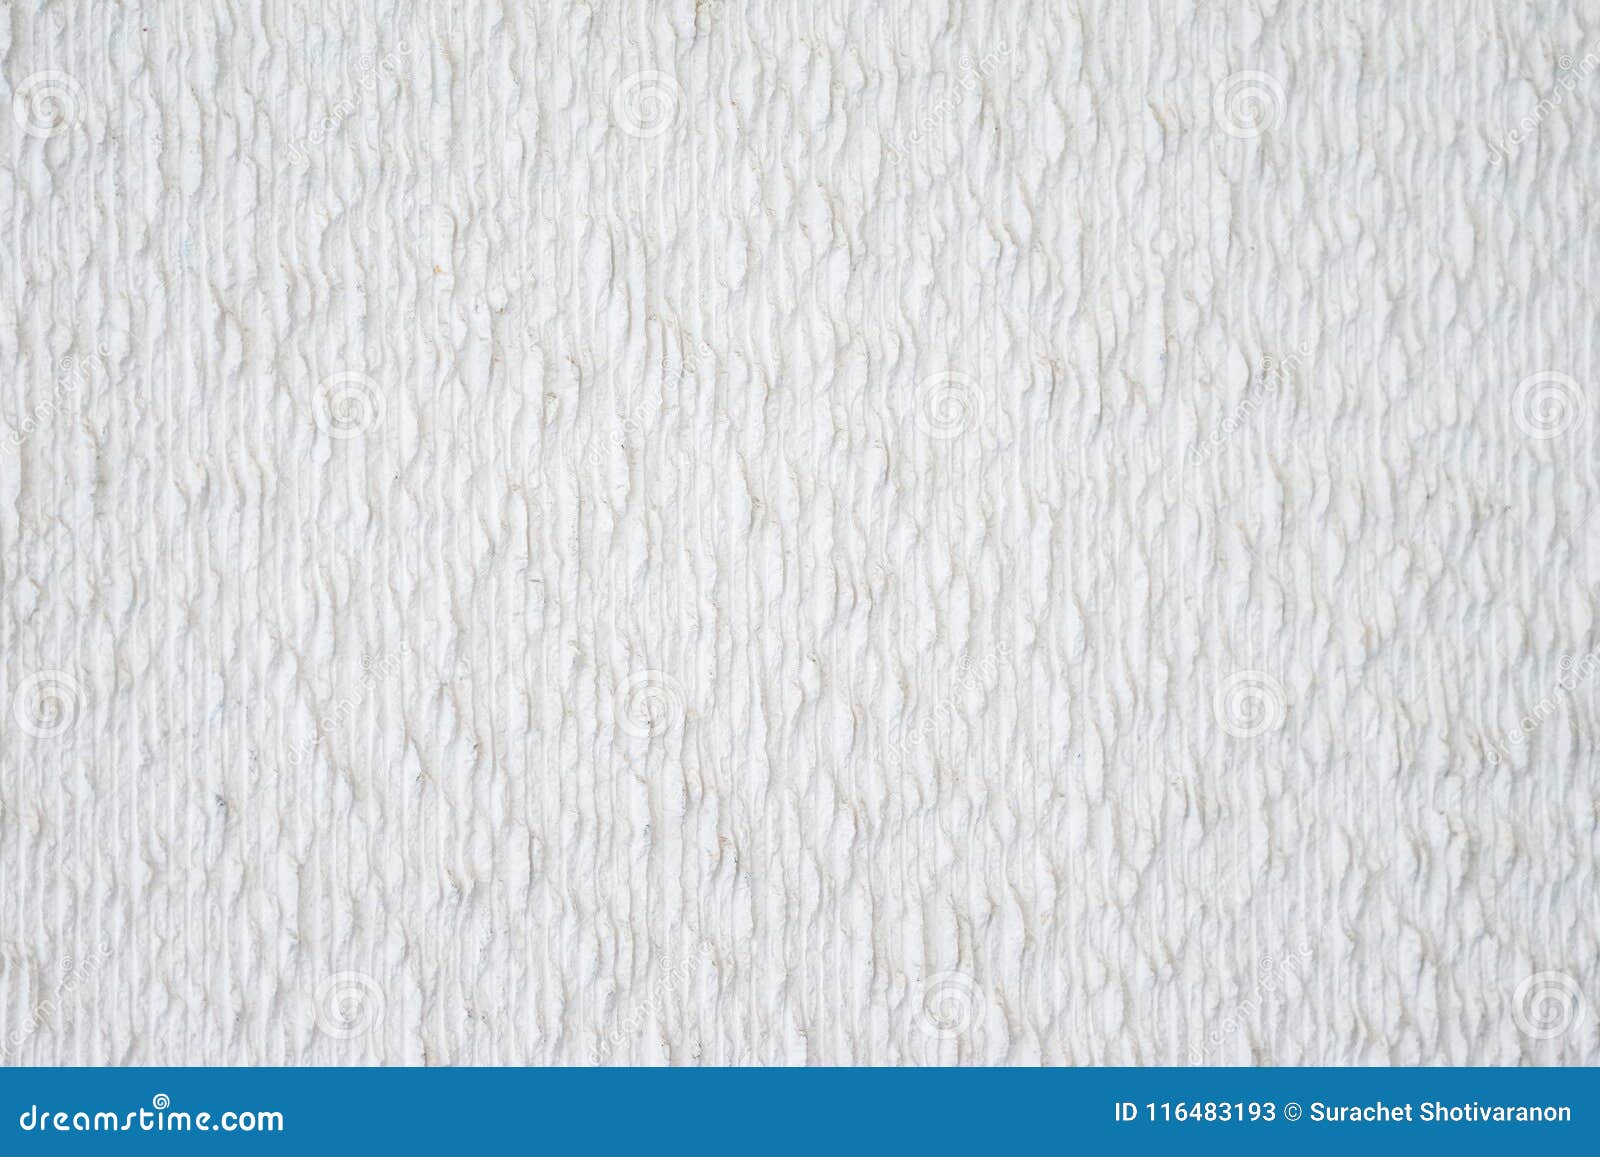 Papel De Parede Branco Clássico Da Textura Imagem De Stock Imagem